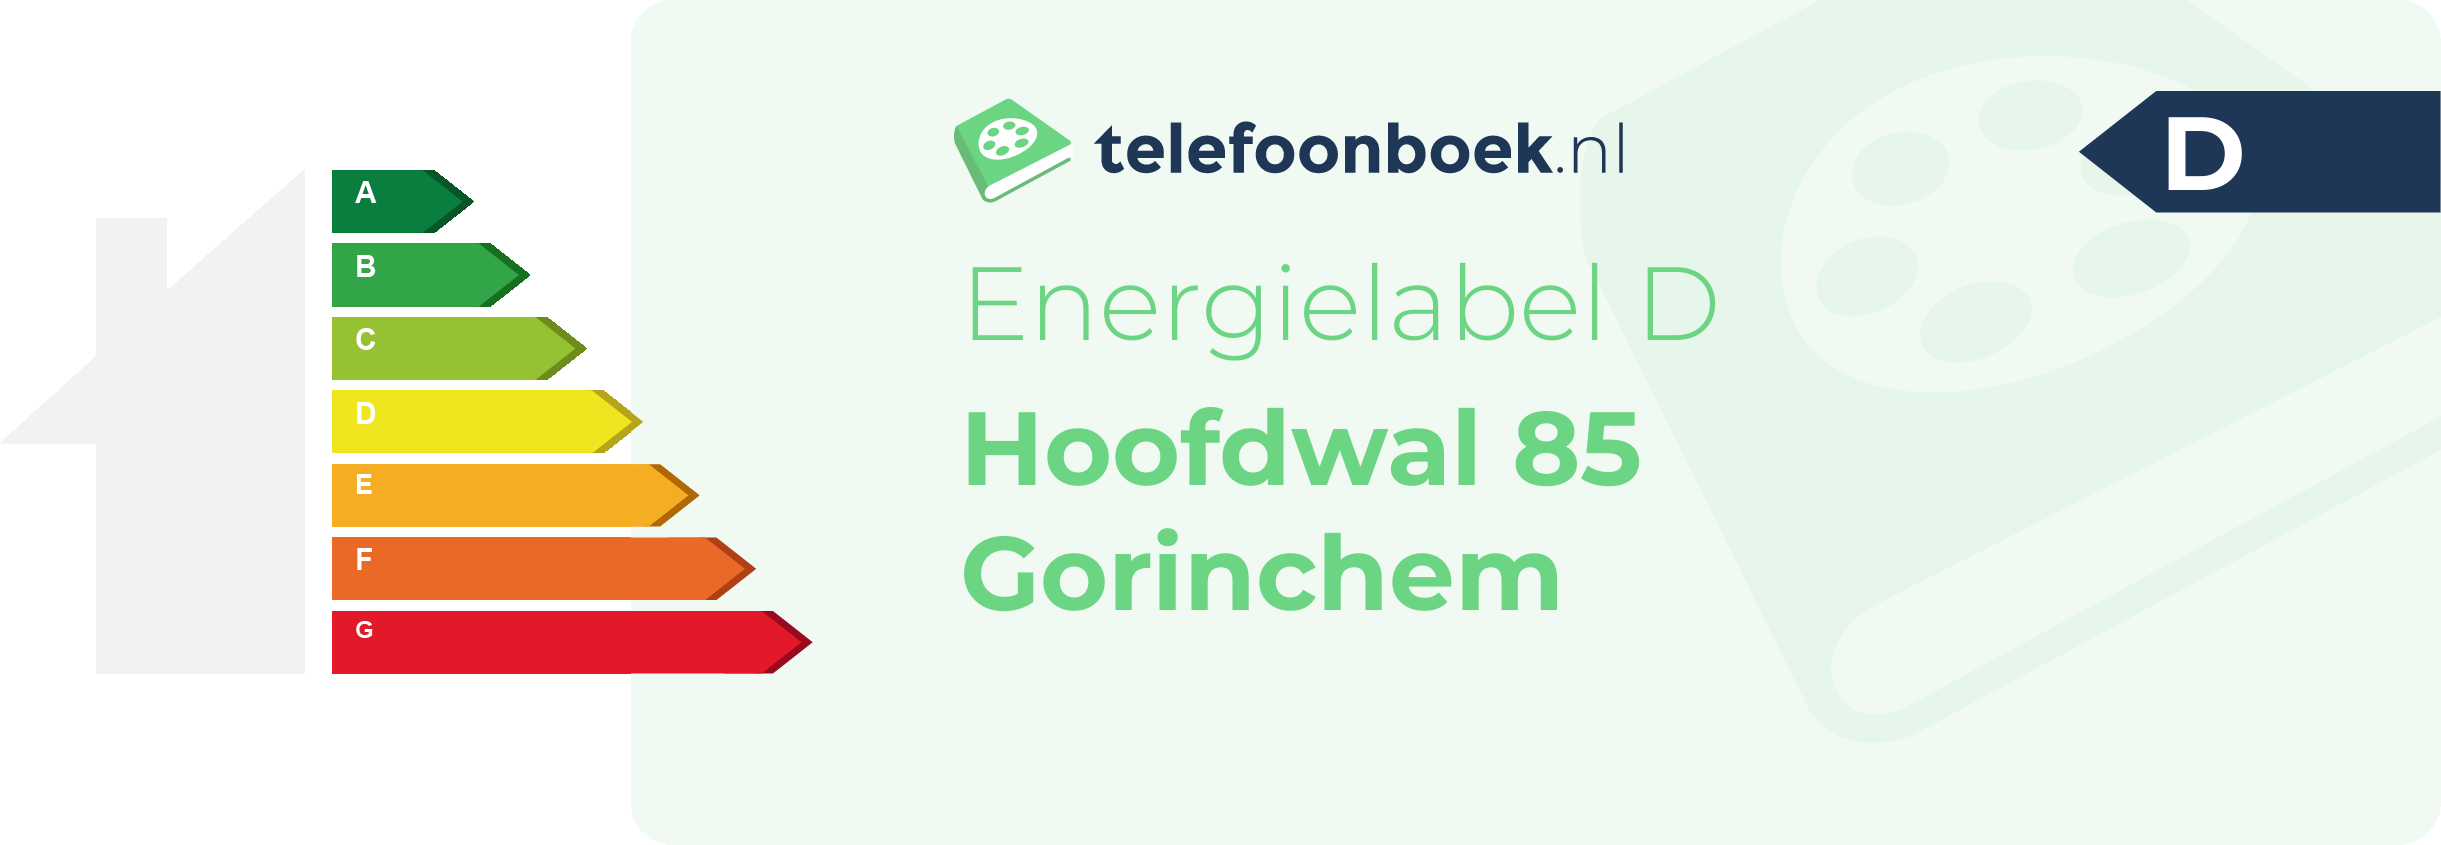 Energielabel Hoofdwal 85 Gorinchem